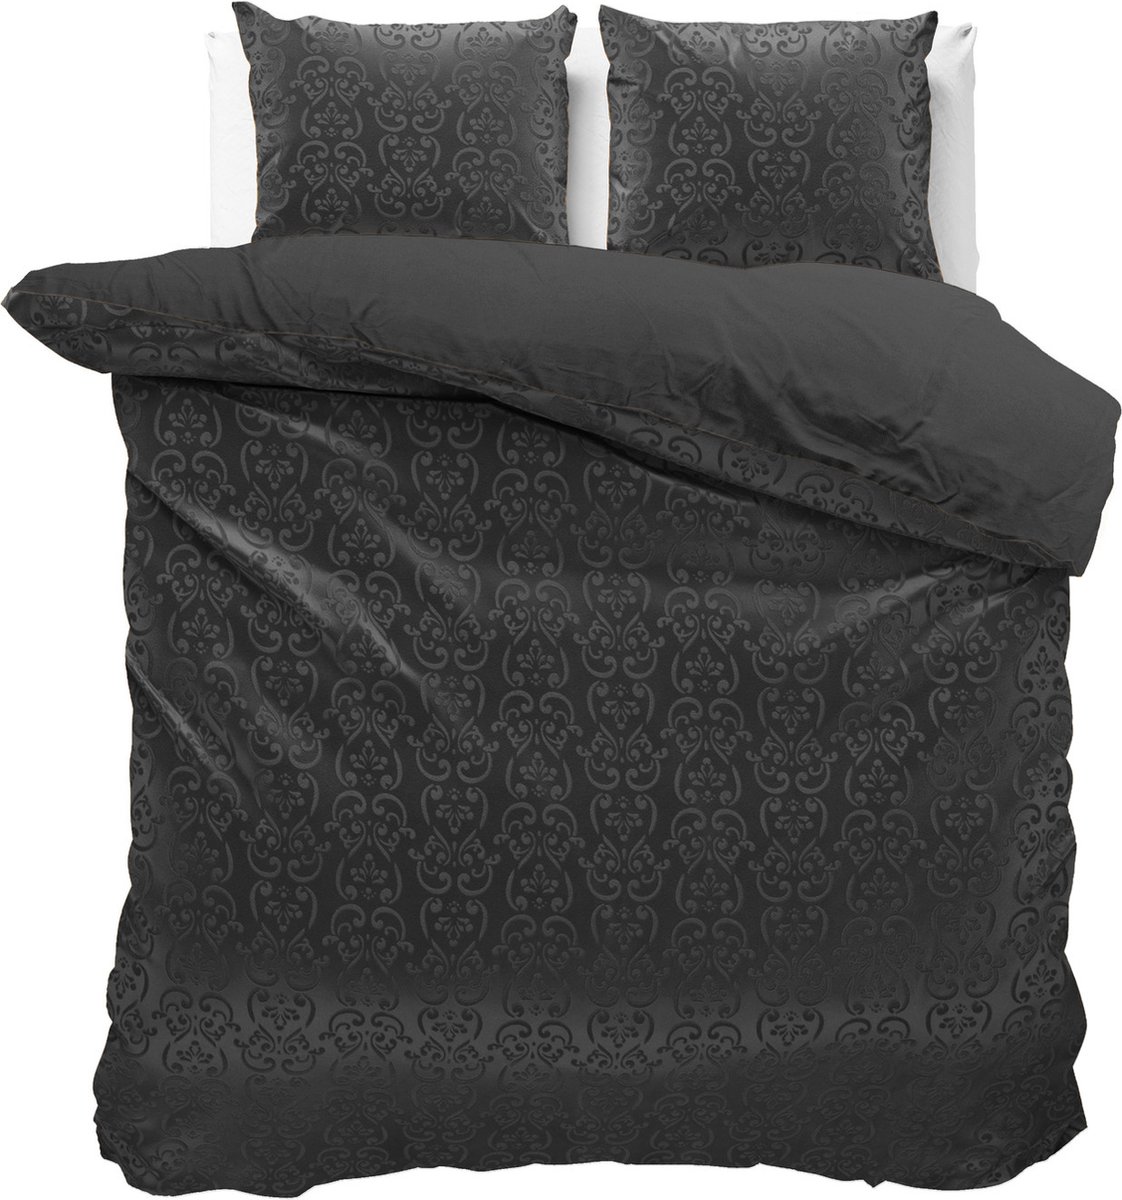 Fluweel zachte velvet dekbedovertrek embossed zwart - lits-jumeaux (240x200/220) - luxe uitstraling - handige drukknopsluiting